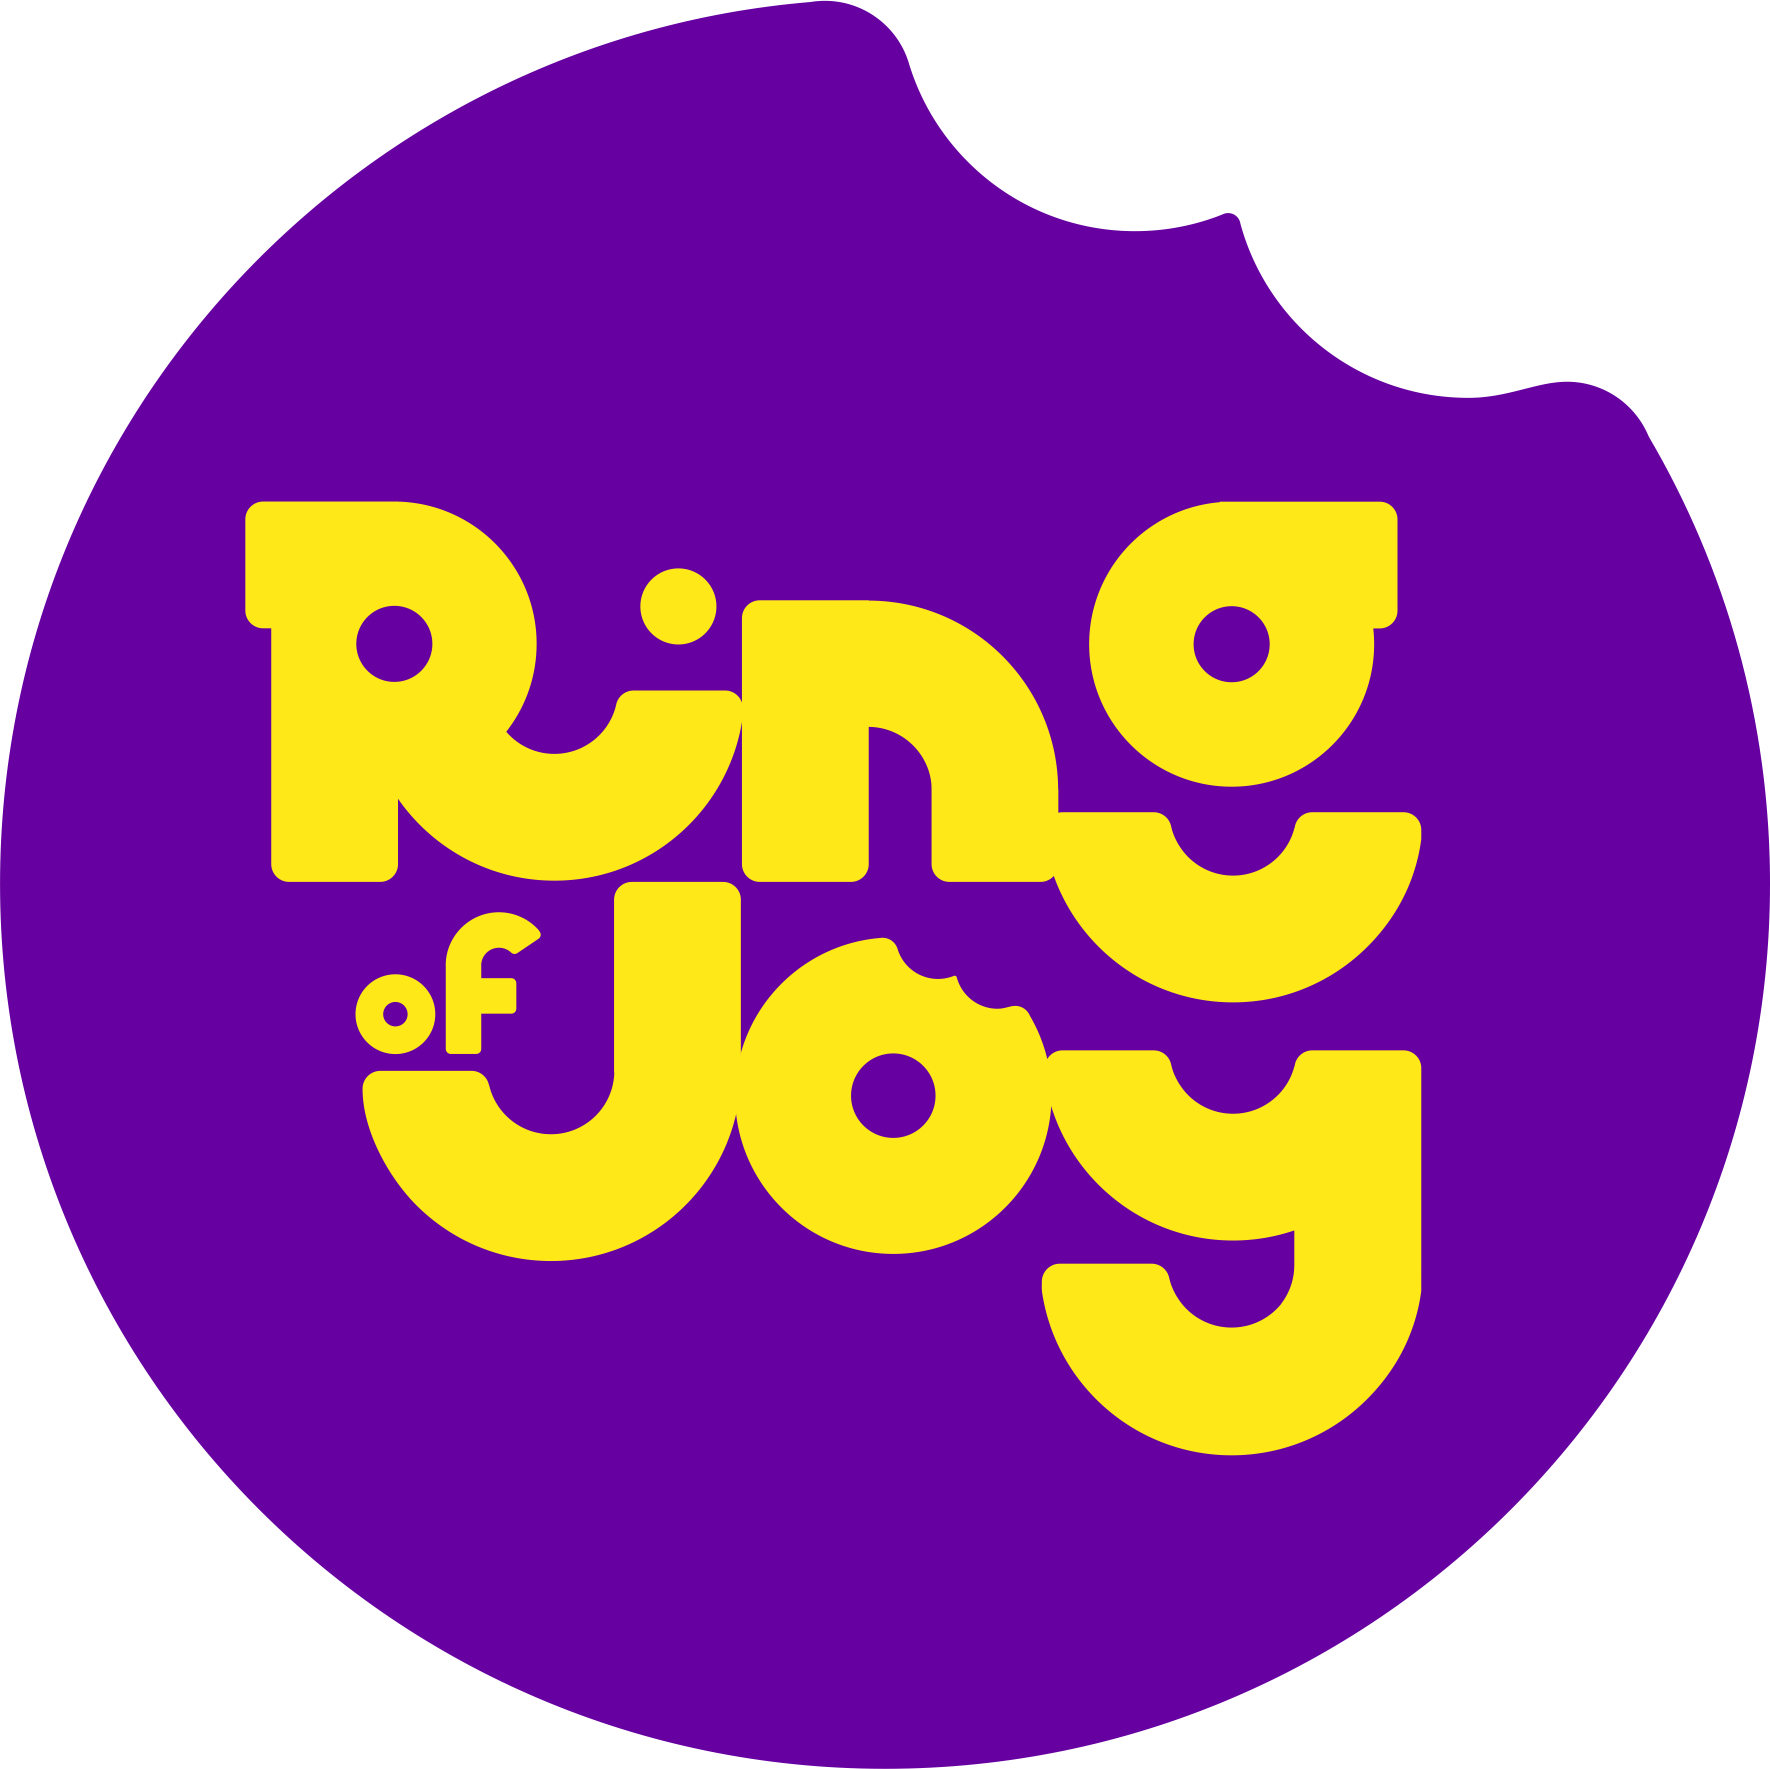 RING OF JOY